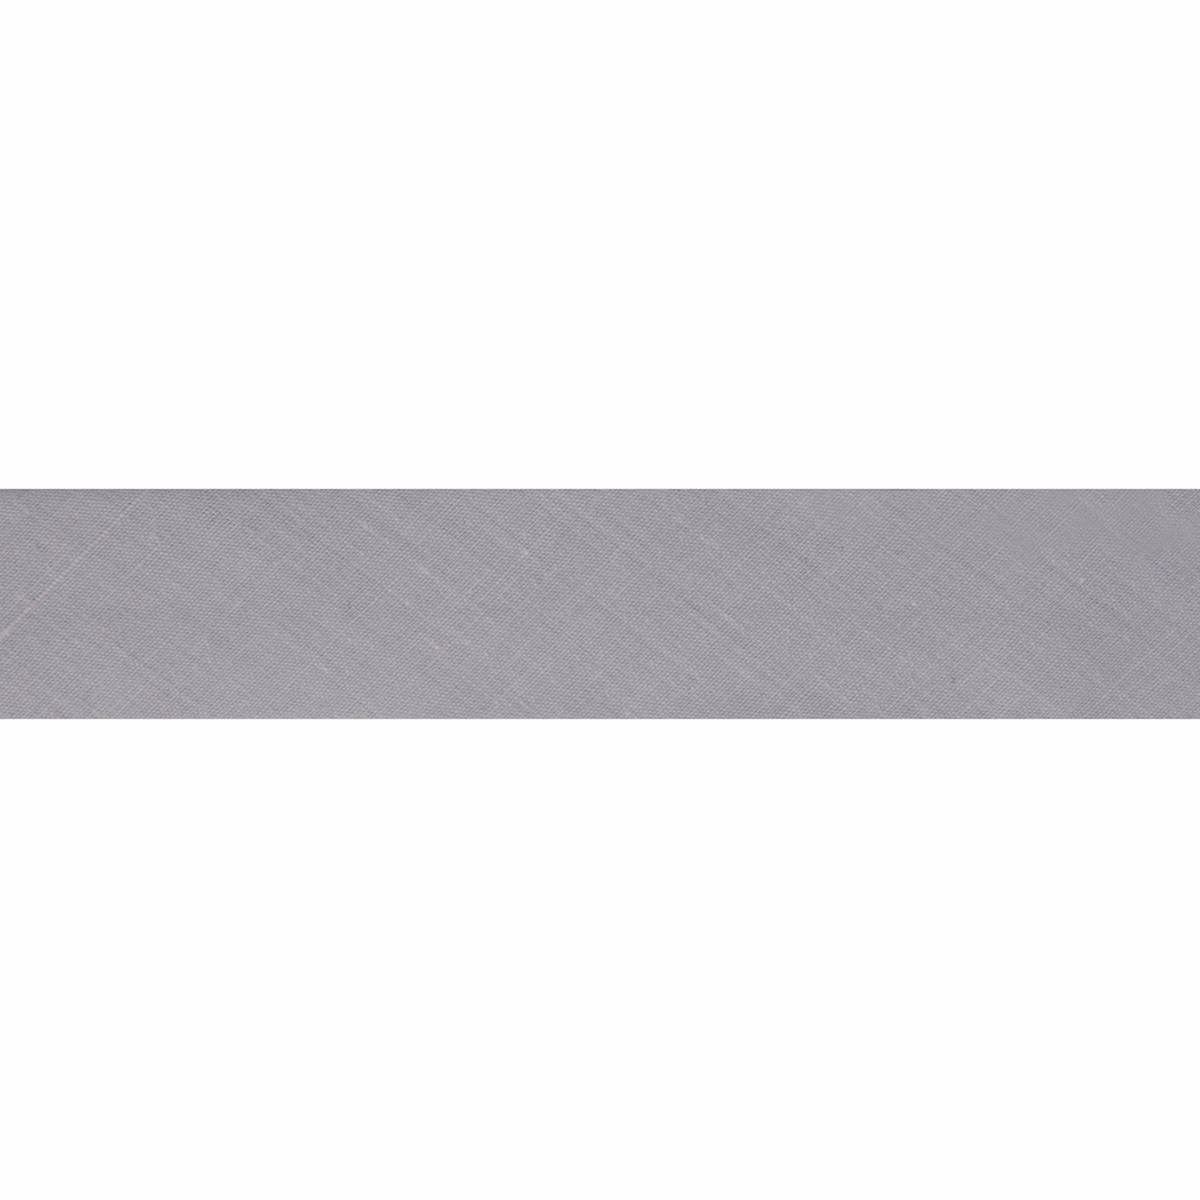 Polycotton Bias Binding 2.5m x 12mm - Pale Grey